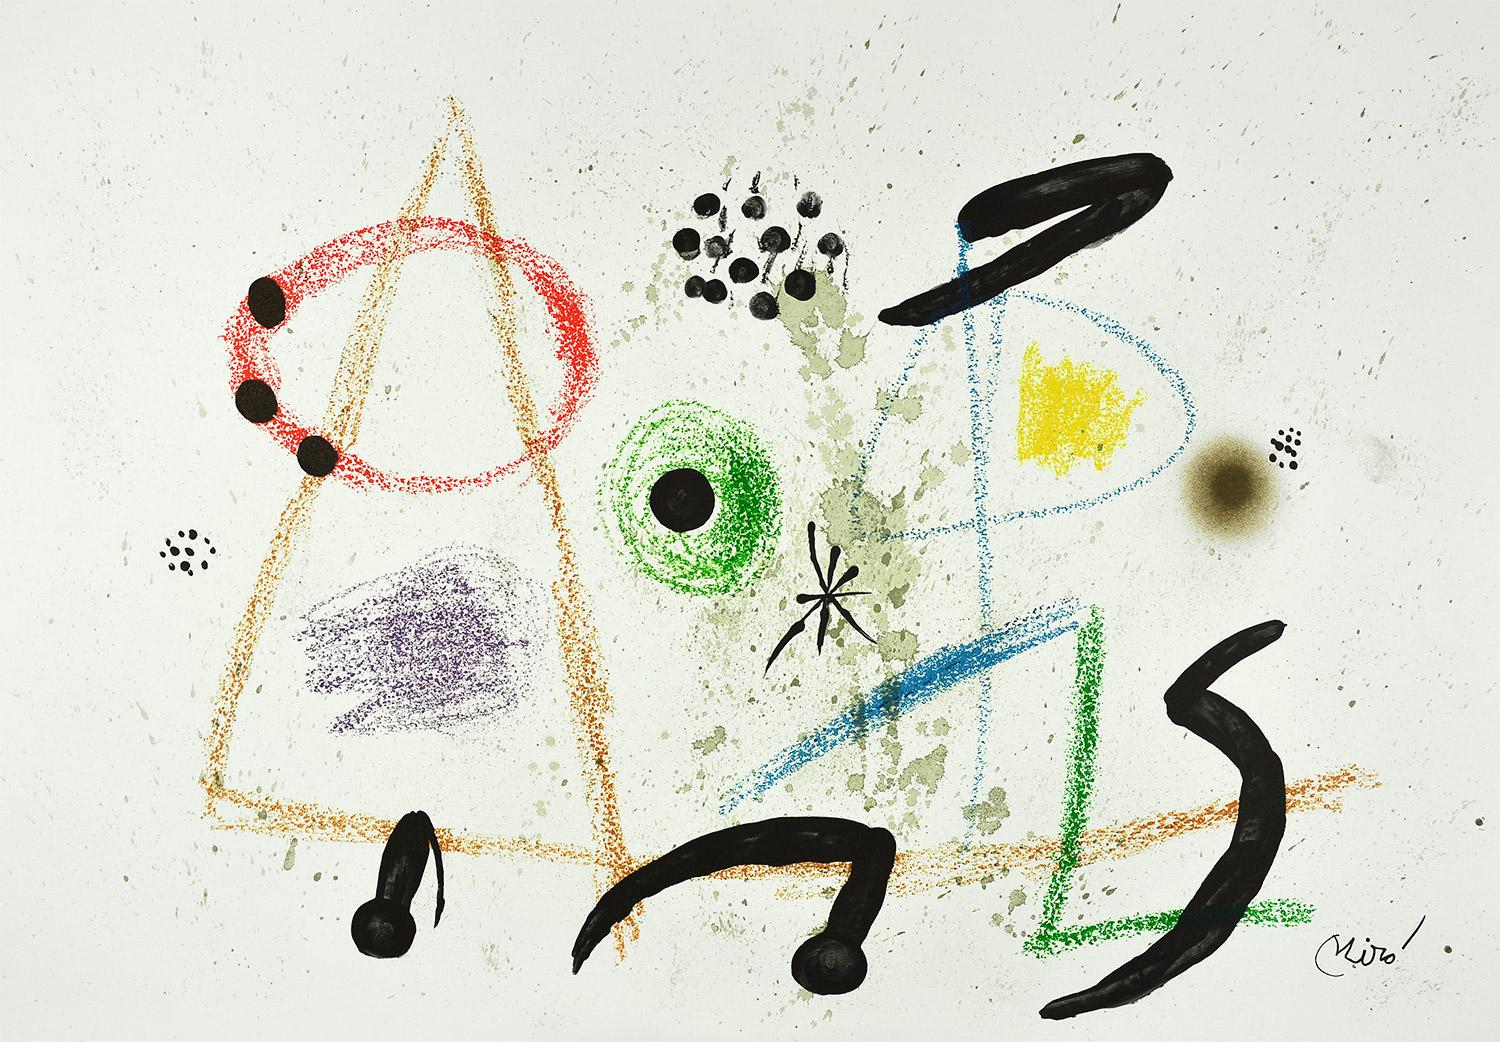 Joan Miró - Maravillas con variaciones acrósticas en el jardín de Miró III
Date de création : 1975
Médium : Lithographie
Médias : Papier Gvarro
Édition : 1500
Taille : 49,5 x 35,5 cm
Condit : En très bon état et jamais encadré
Observations :